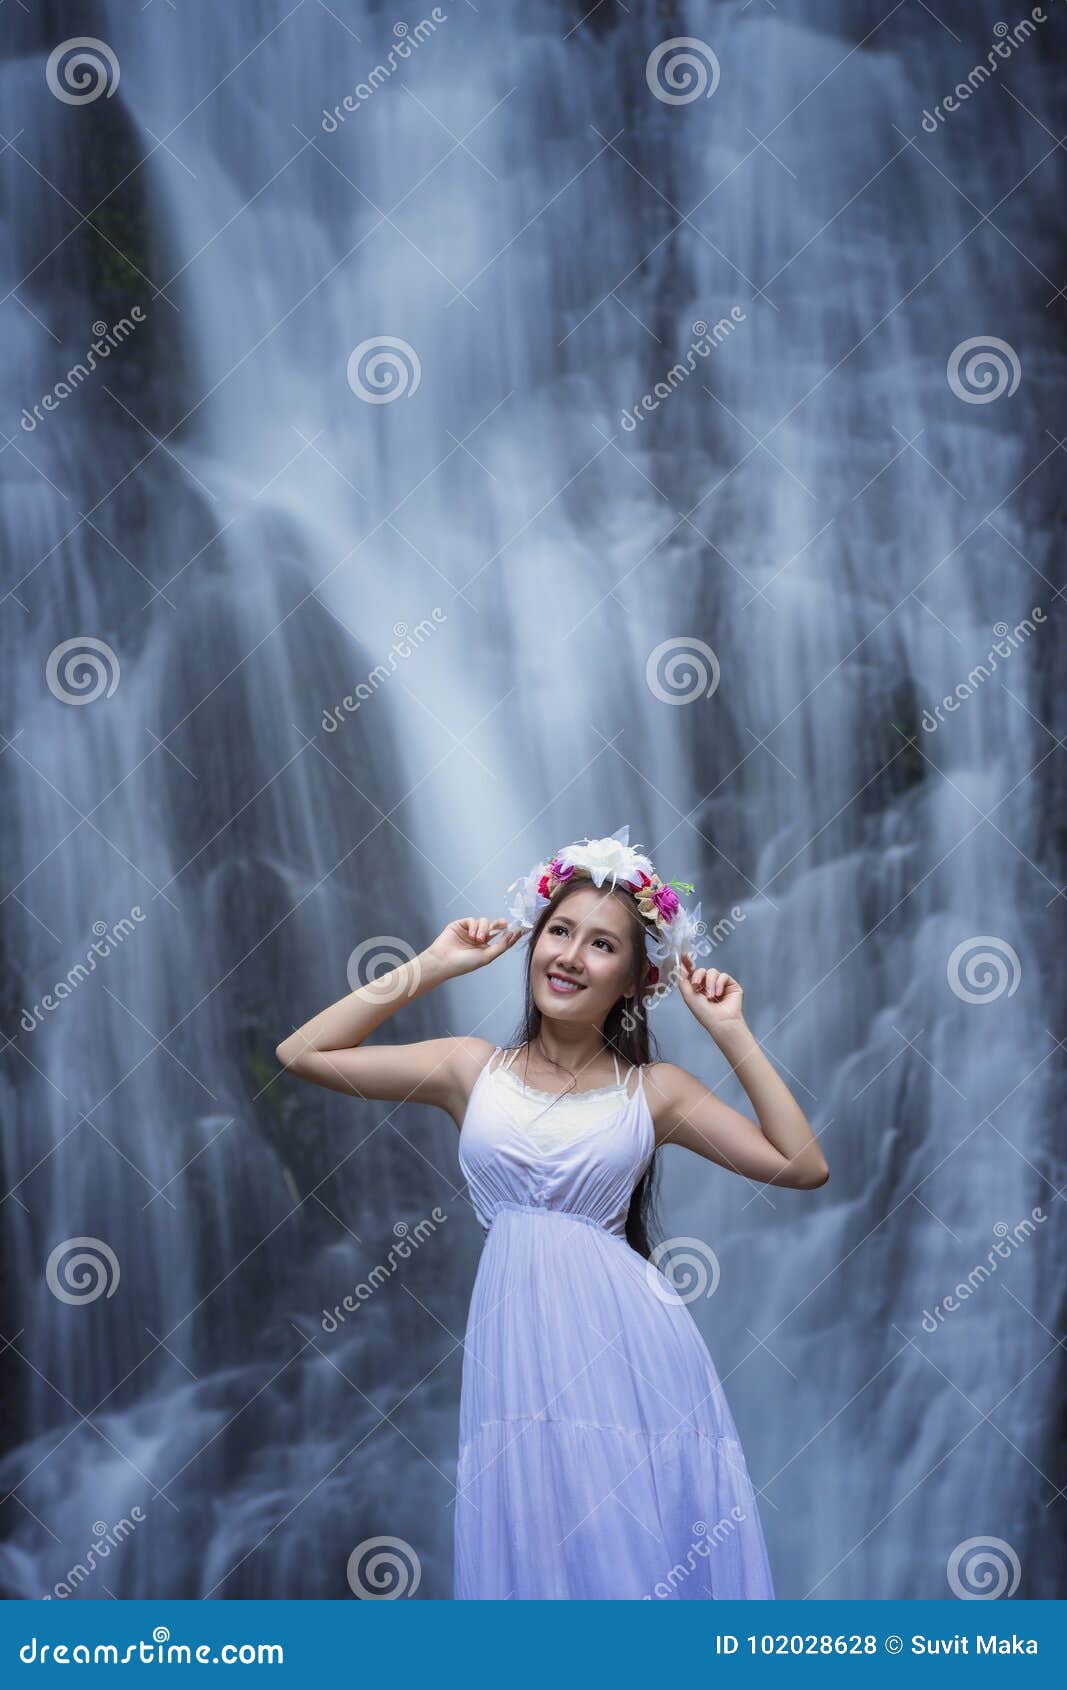 【携程攻略】重庆万州大瀑布景点,我是和女朋友一起来到万州大瀑布景区旅游的 总体还算可以的吧 性价比…